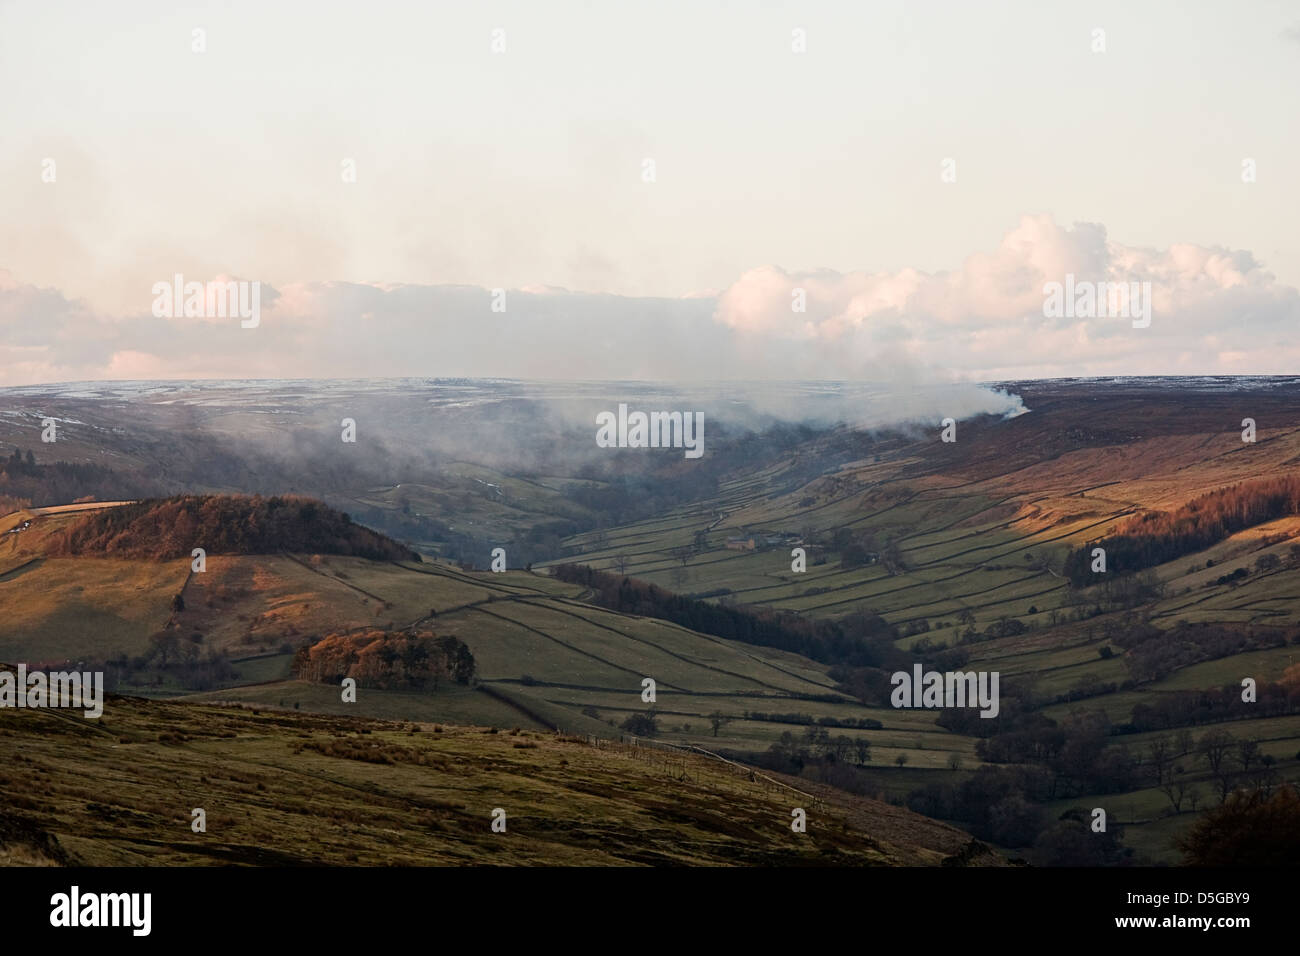 Photographie de paysage montrant le North Yorkshire Moors, près de Rose Dale. L'image montre le brûlis des maures. Banque D'Images